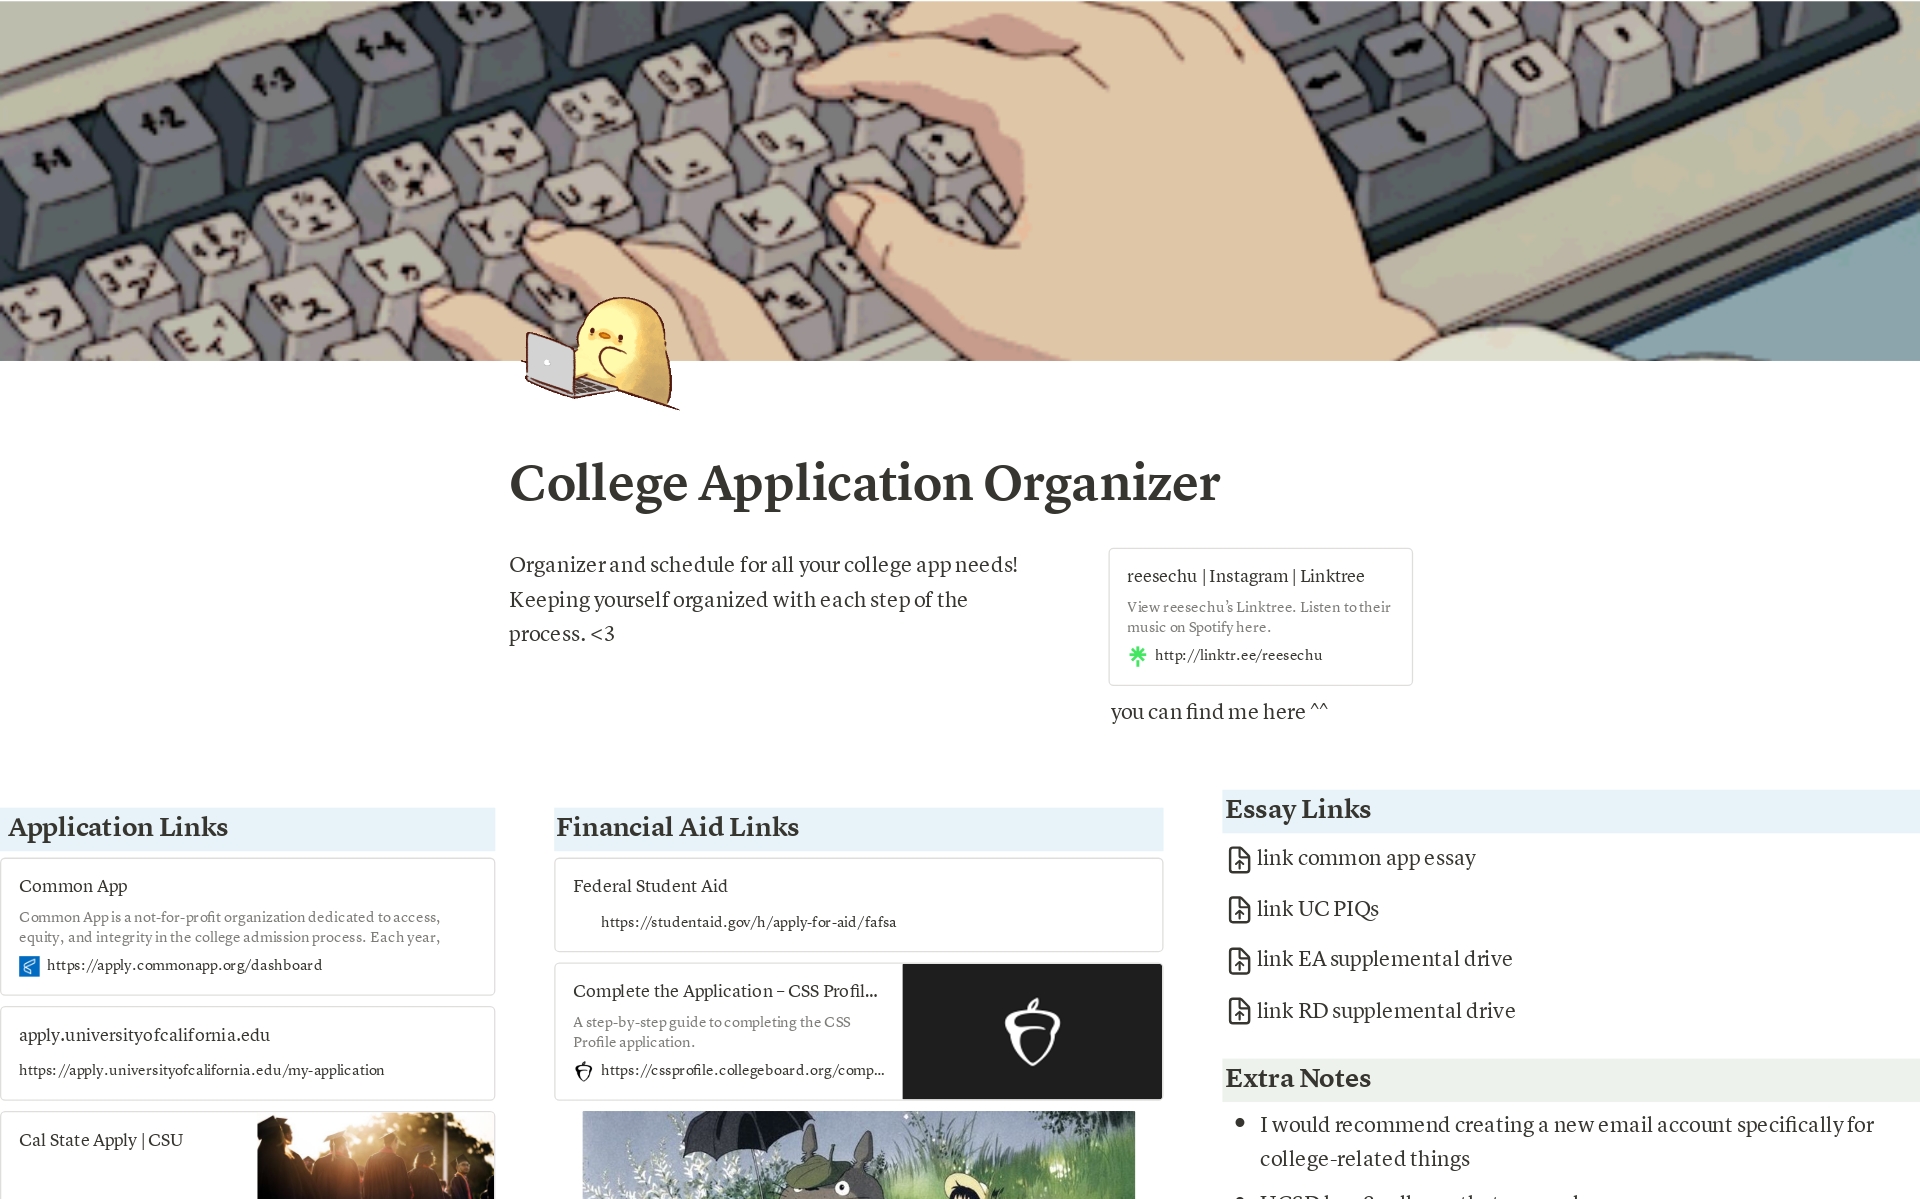 Vista previa de una plantilla para College Applications Organizer